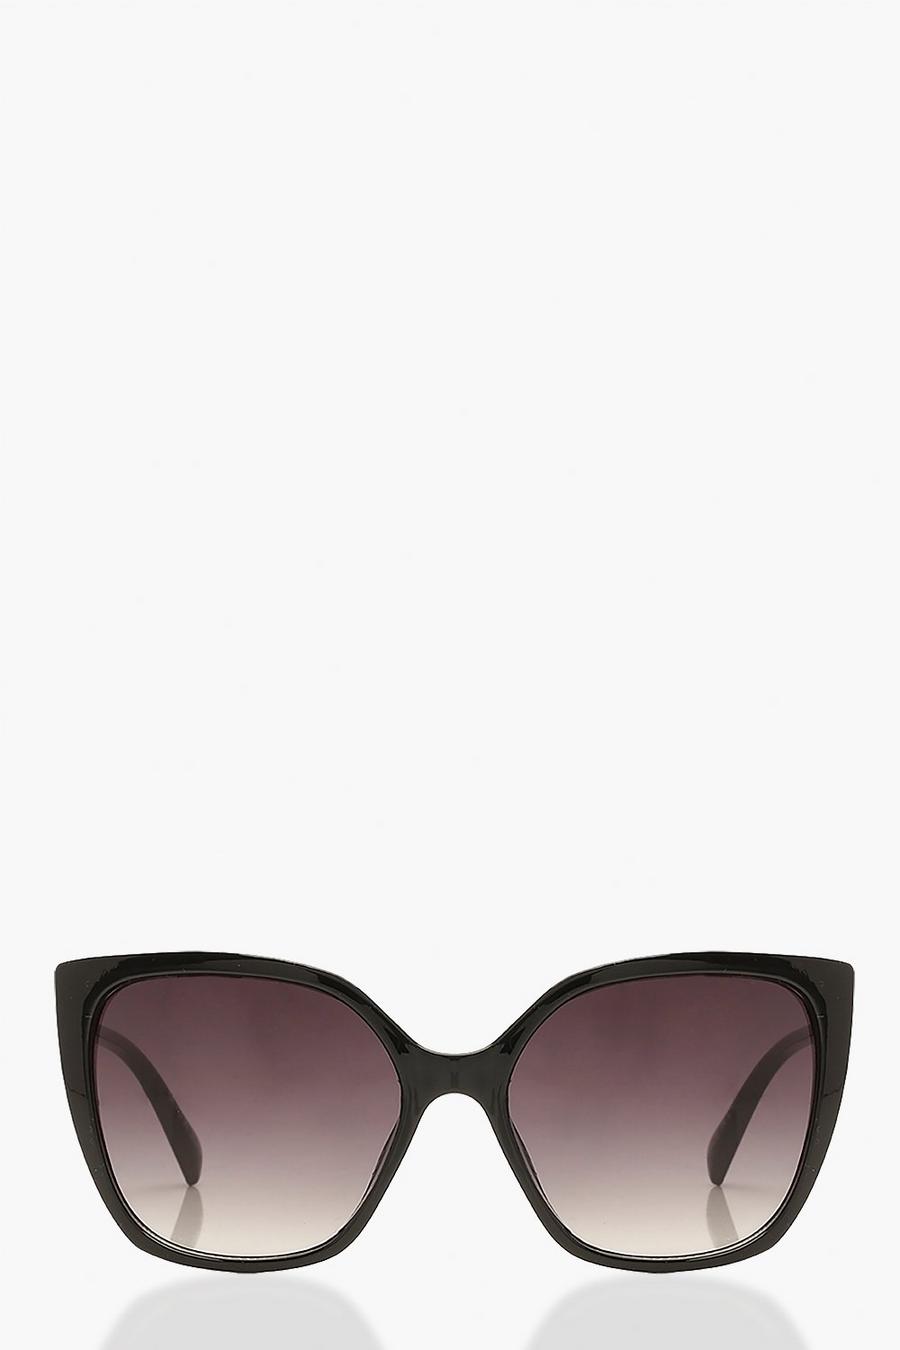 Black Oversized Cat Eye Sunglasses Polarized Gradient Lens